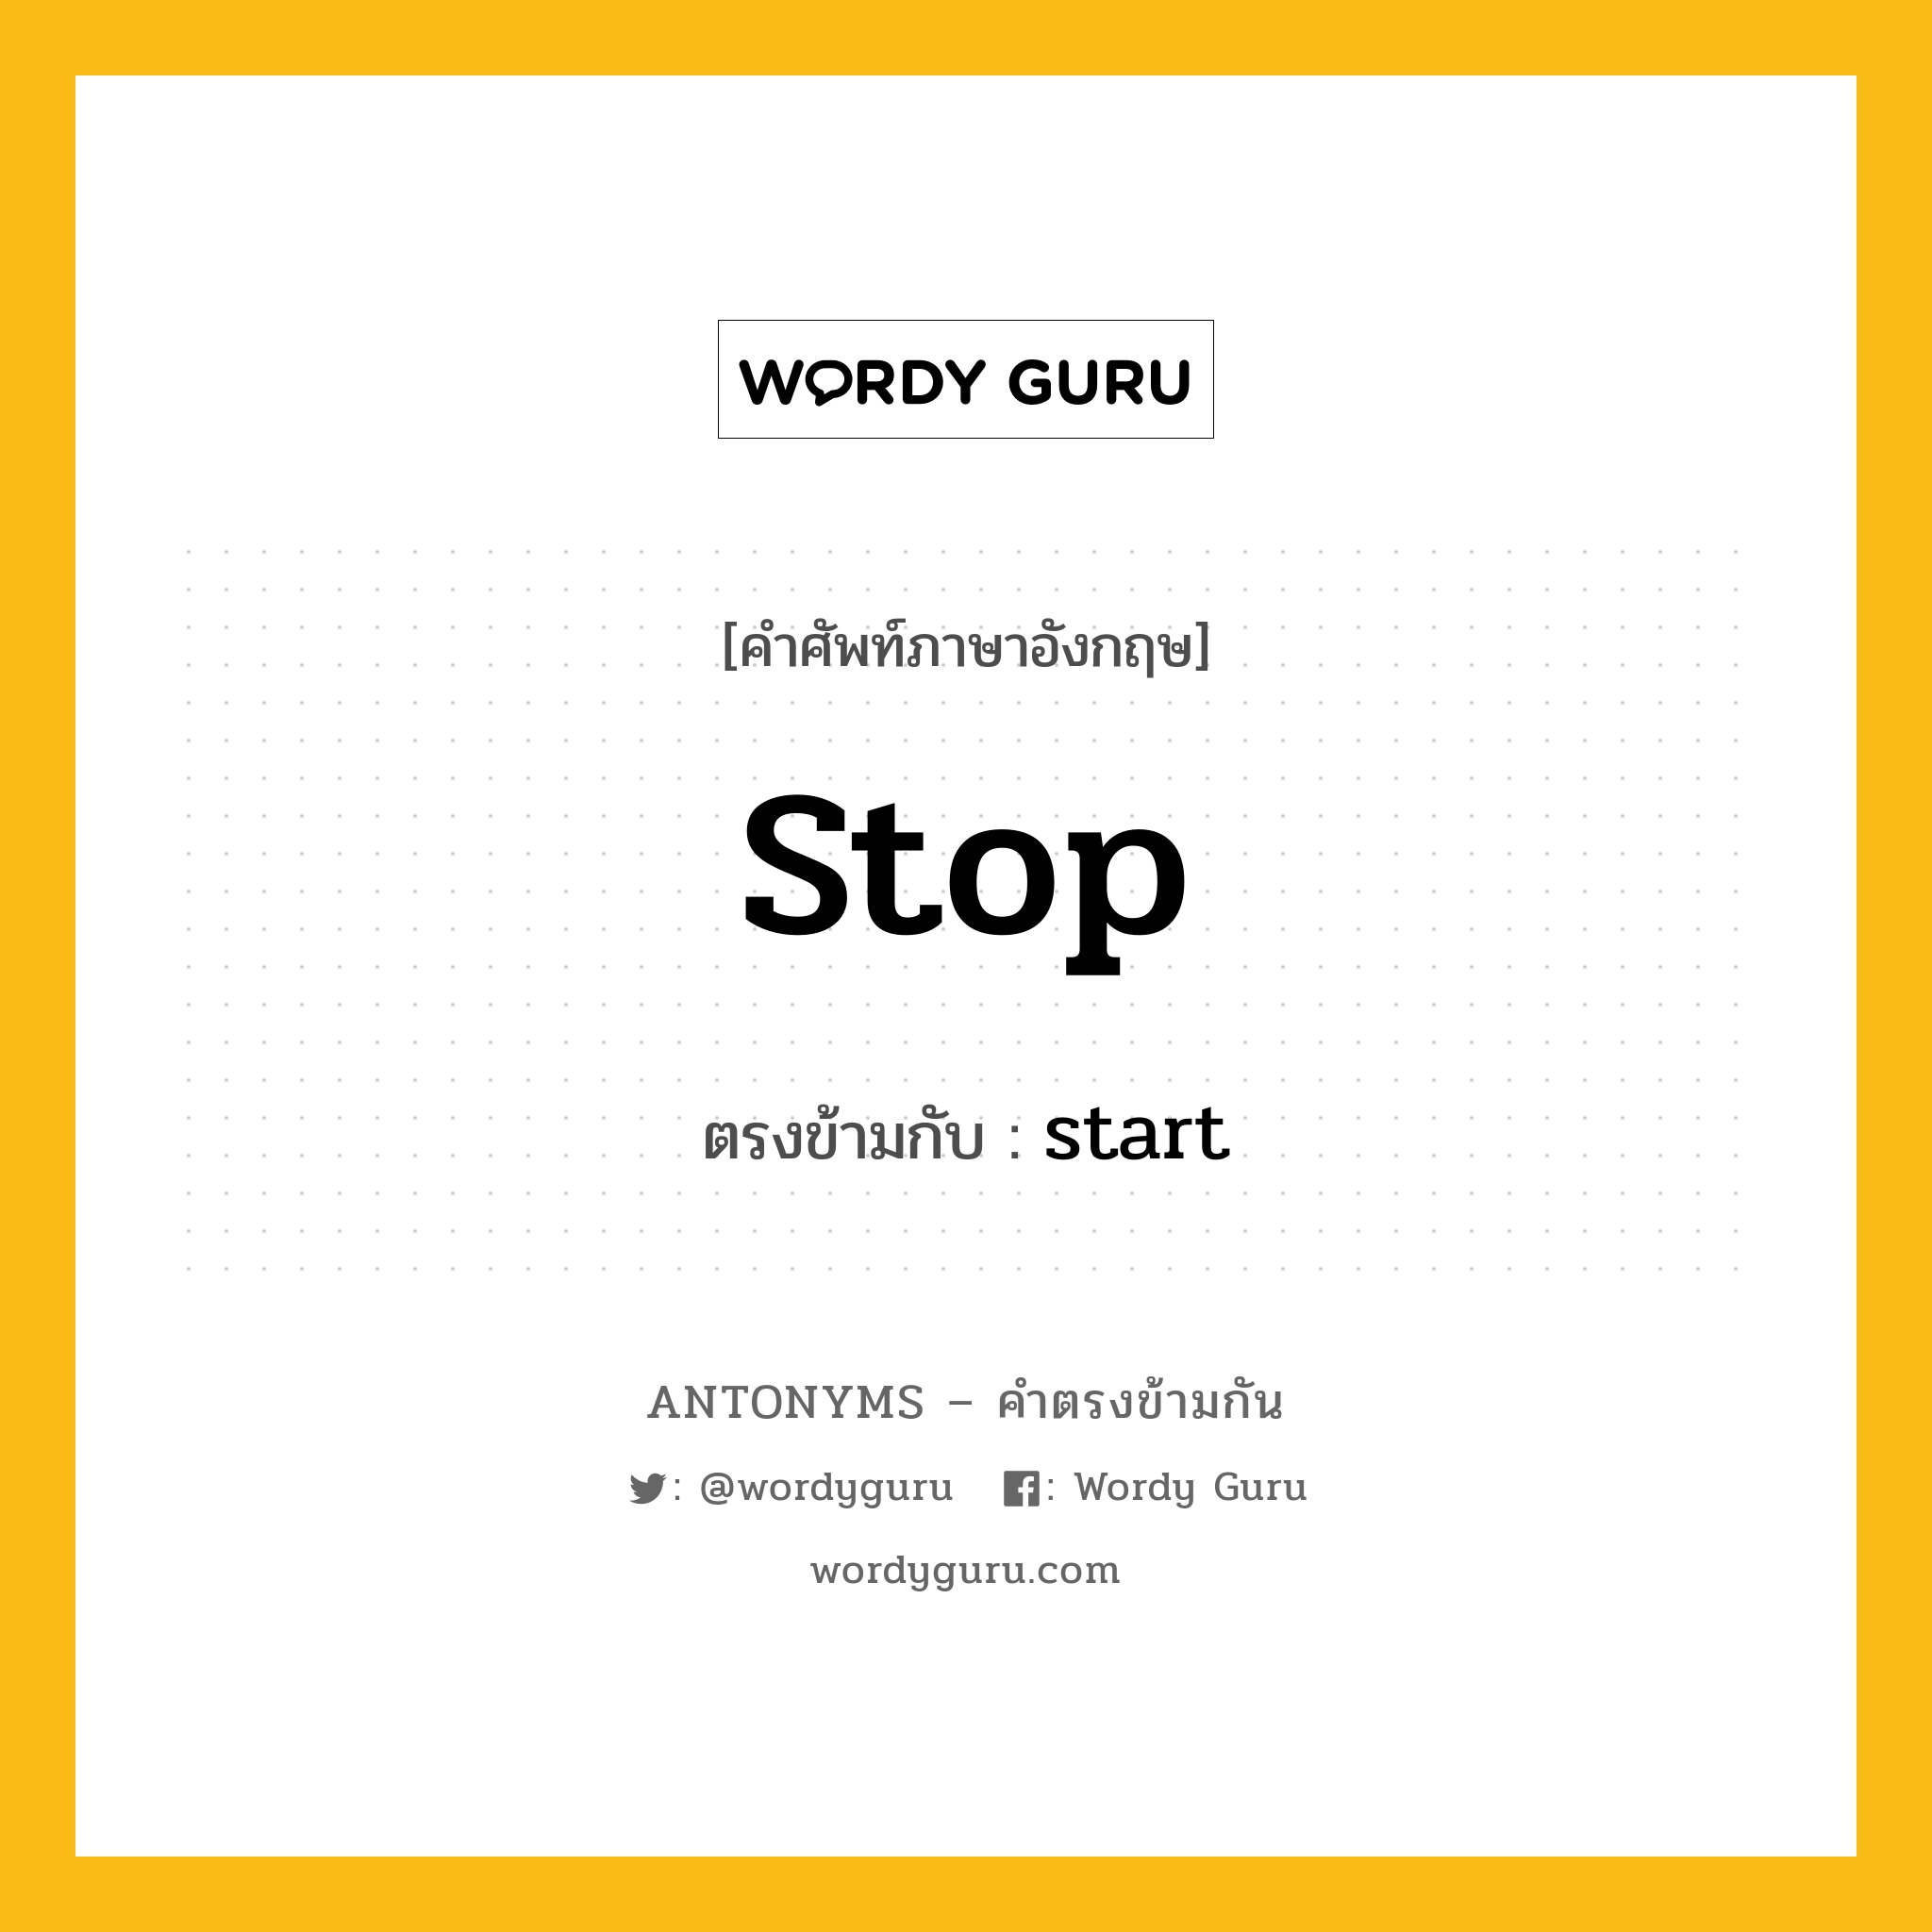 stop เป็นคำตรงข้ามกับคำไหนบ้าง?, คำศัพท์ภาษาอังกฤษ stop ตรงข้ามกับ start หมวด start